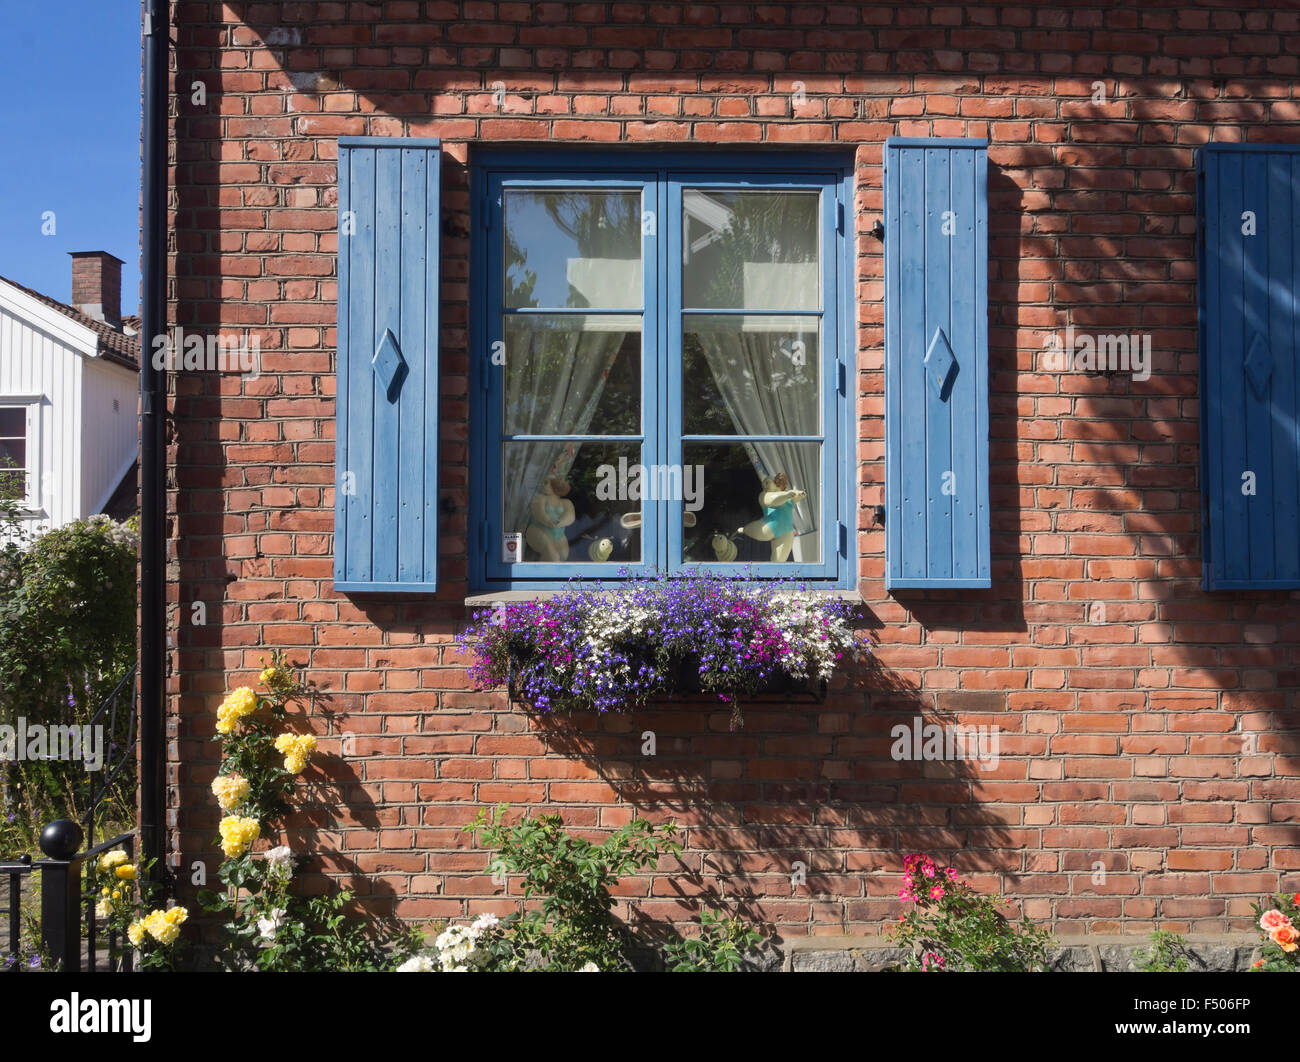 Détail de l'idyllique maison en brique rouge, bleu châssis de fenêtre, volets roulants, fleurs bleu à la case, été impression de Drobak Norvège Banque D'Images